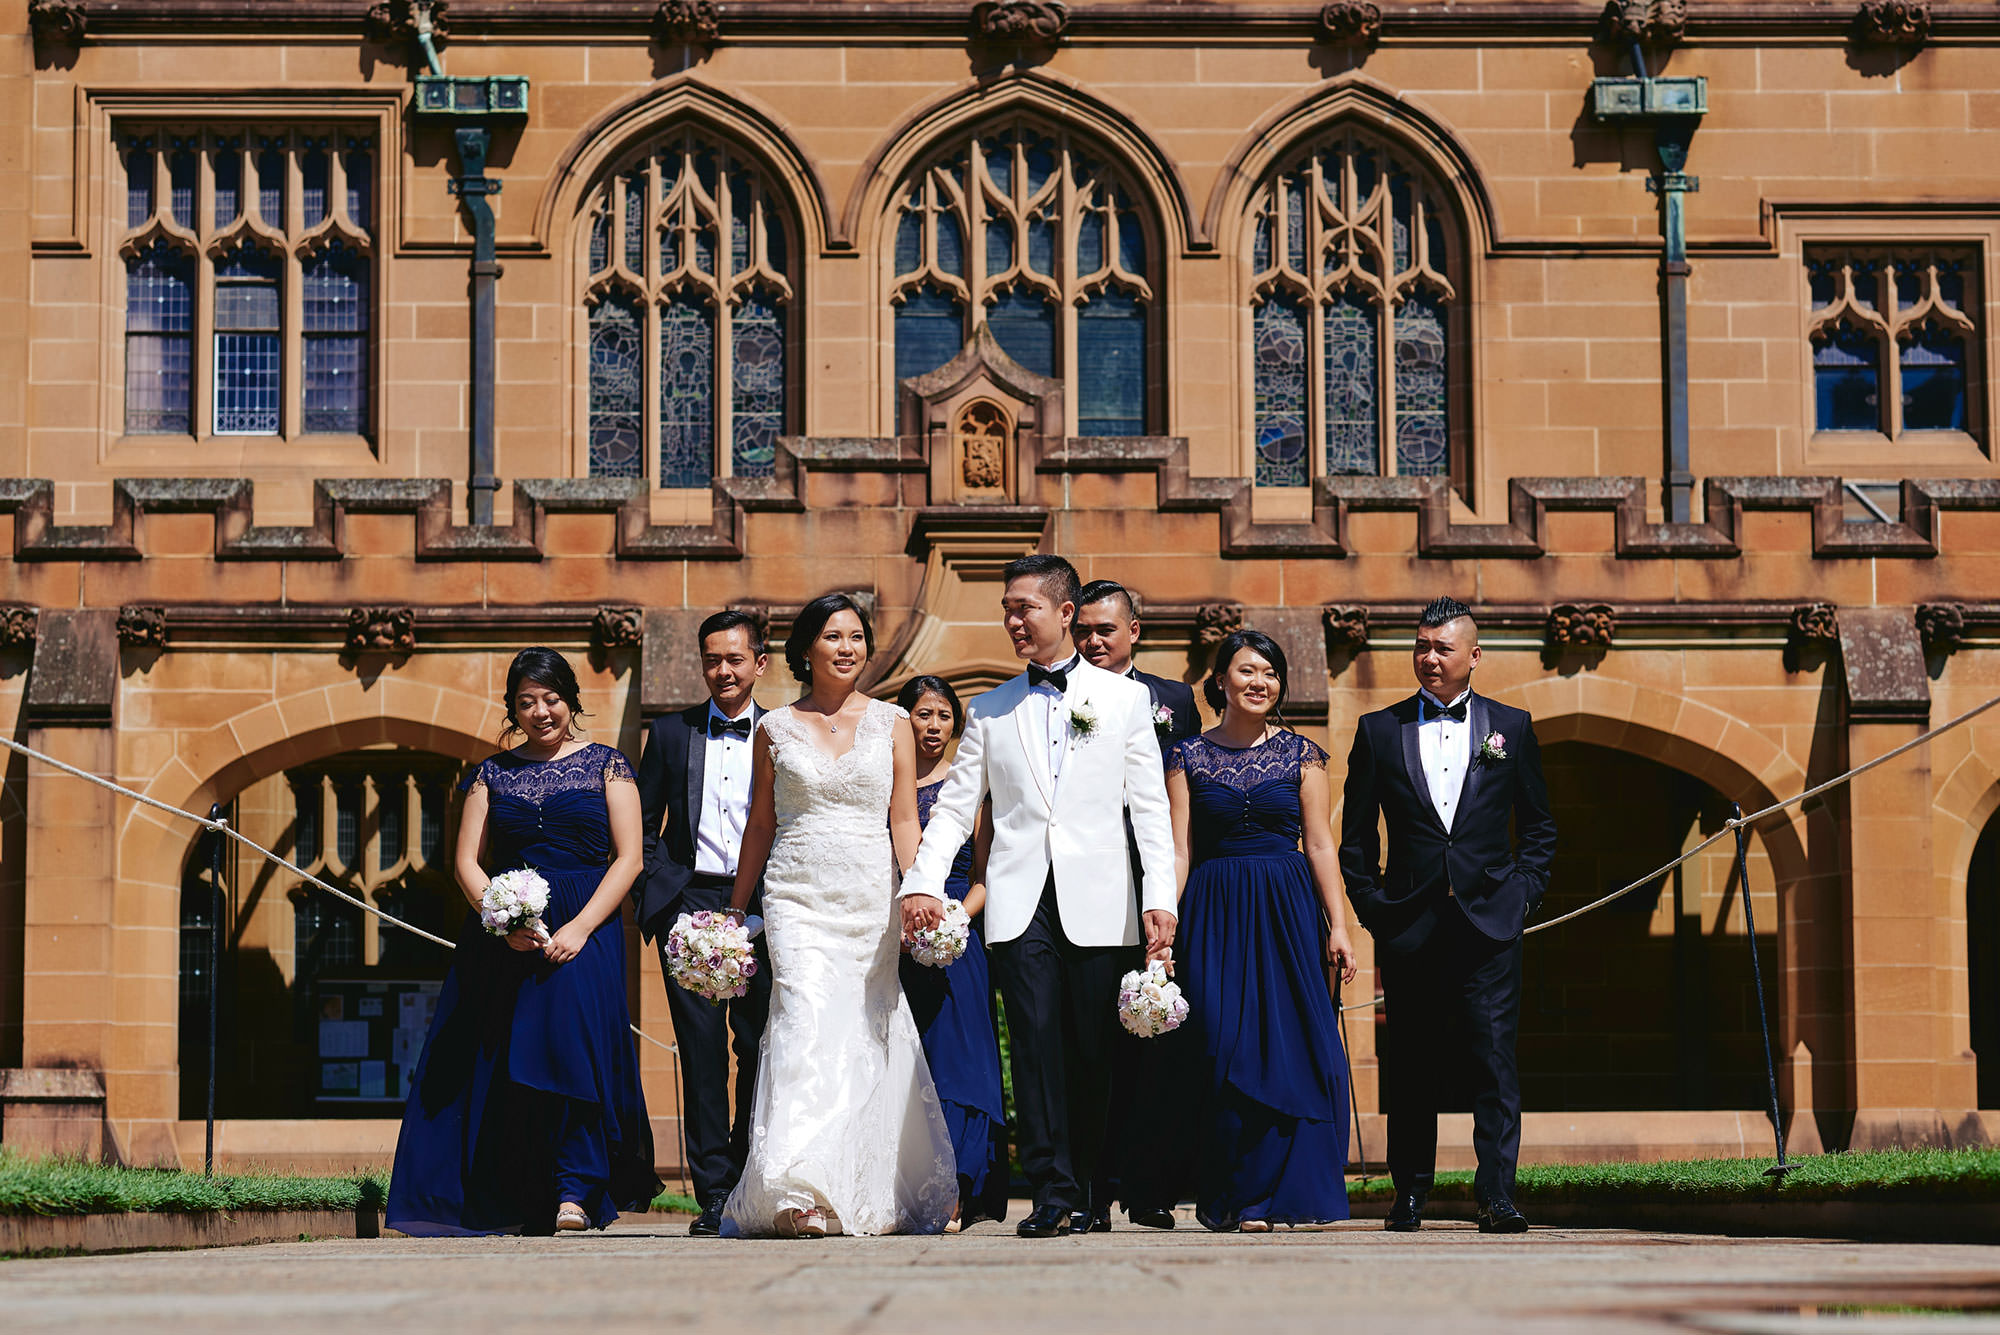 Quadrangle at Sydney Uni for Vu and Vivian wedding photos